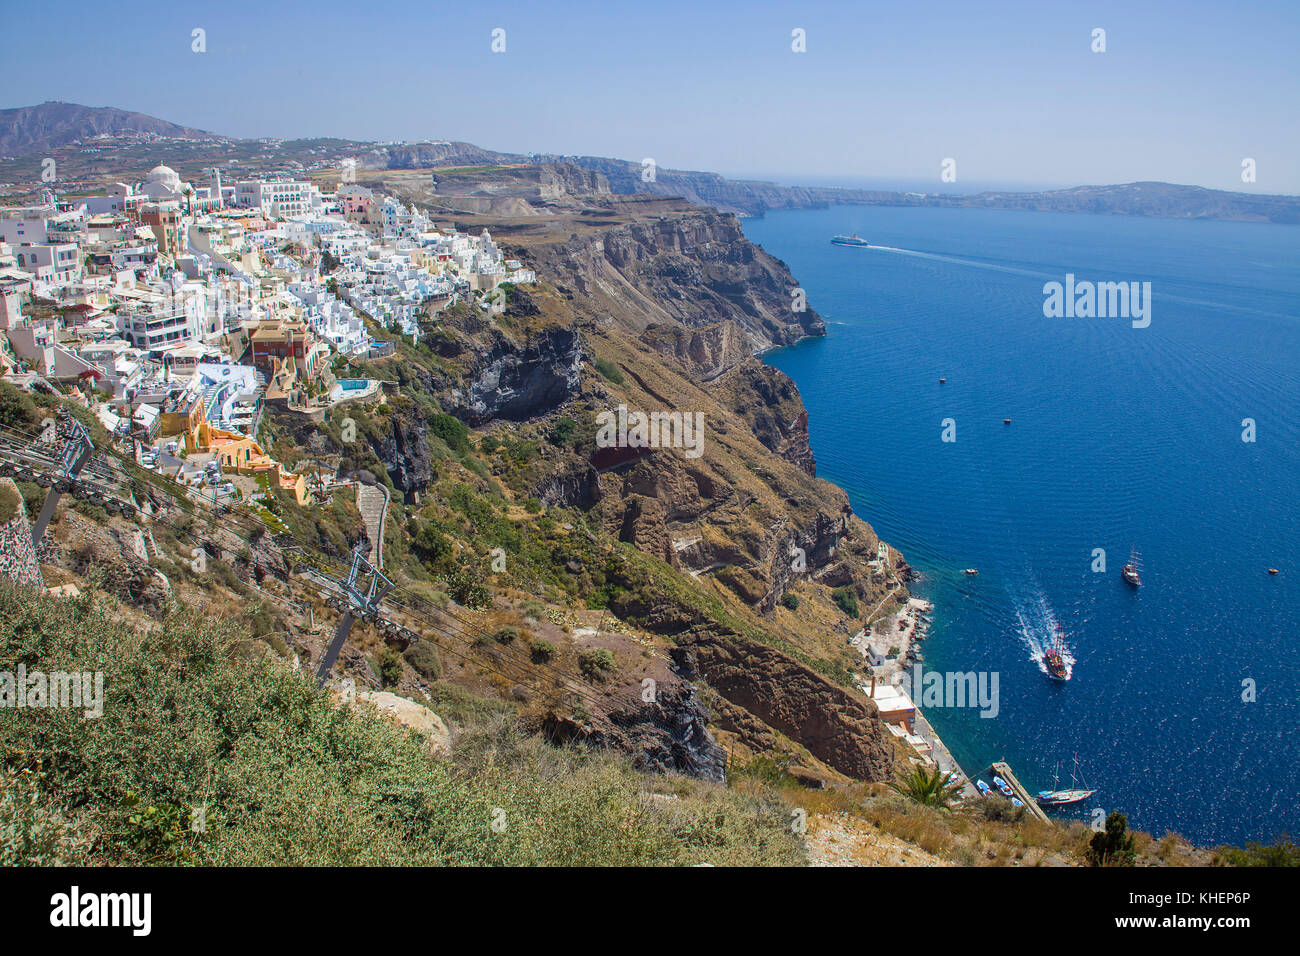 Vue depuis le bord du cratère de la ville de Thira, chemin et le vieux port, l'île de Santorin, Cyclades, Mer Égée, Grèce Banque D'Images